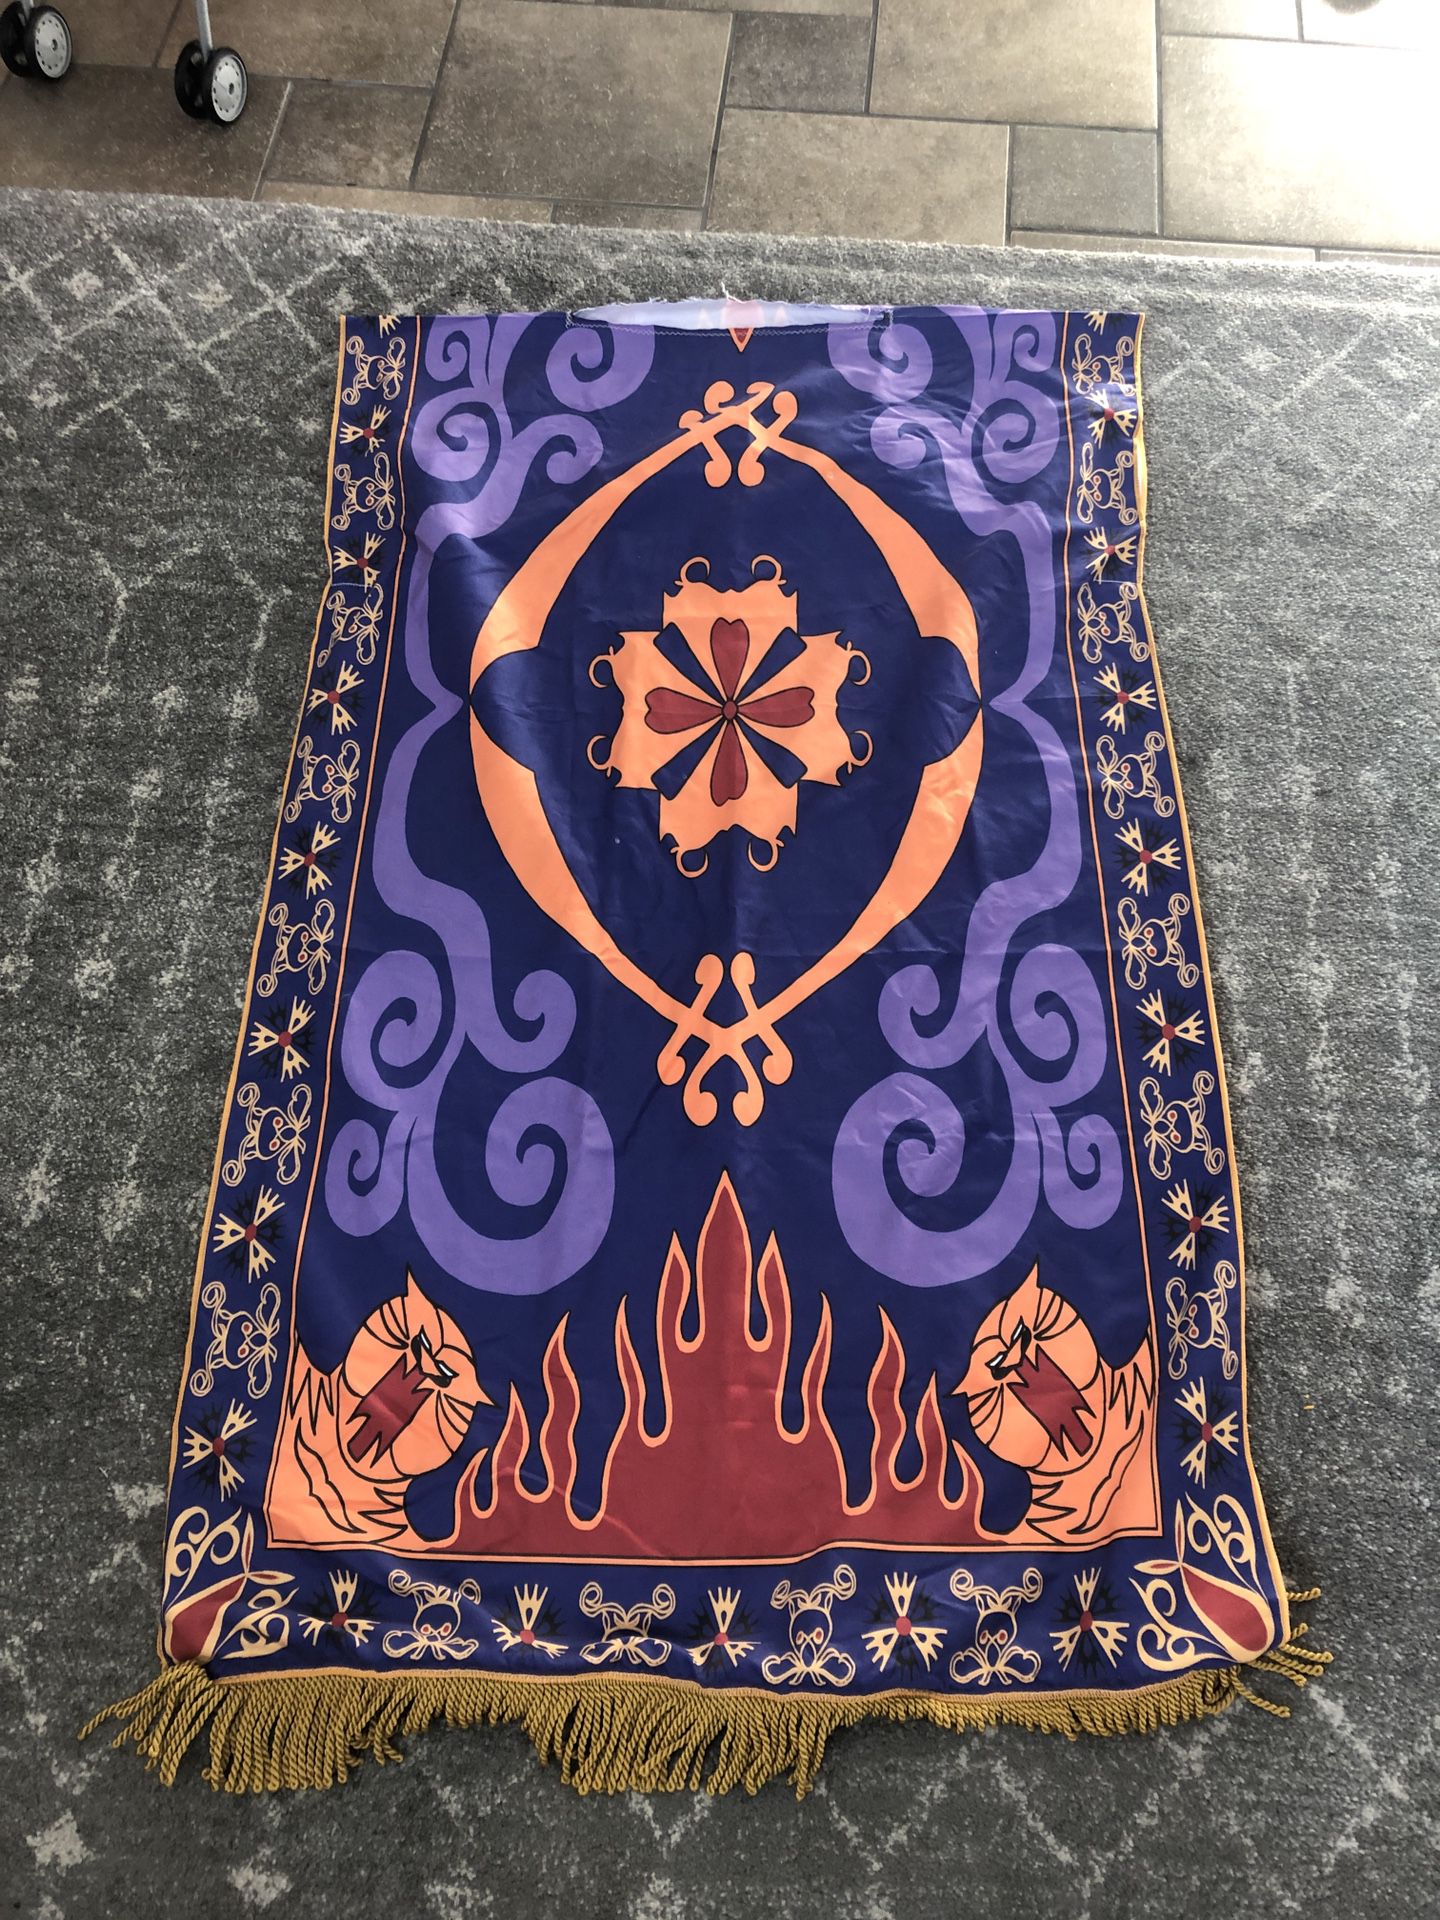 UNIQUE Aladdin Magic carpet costume - home sewn